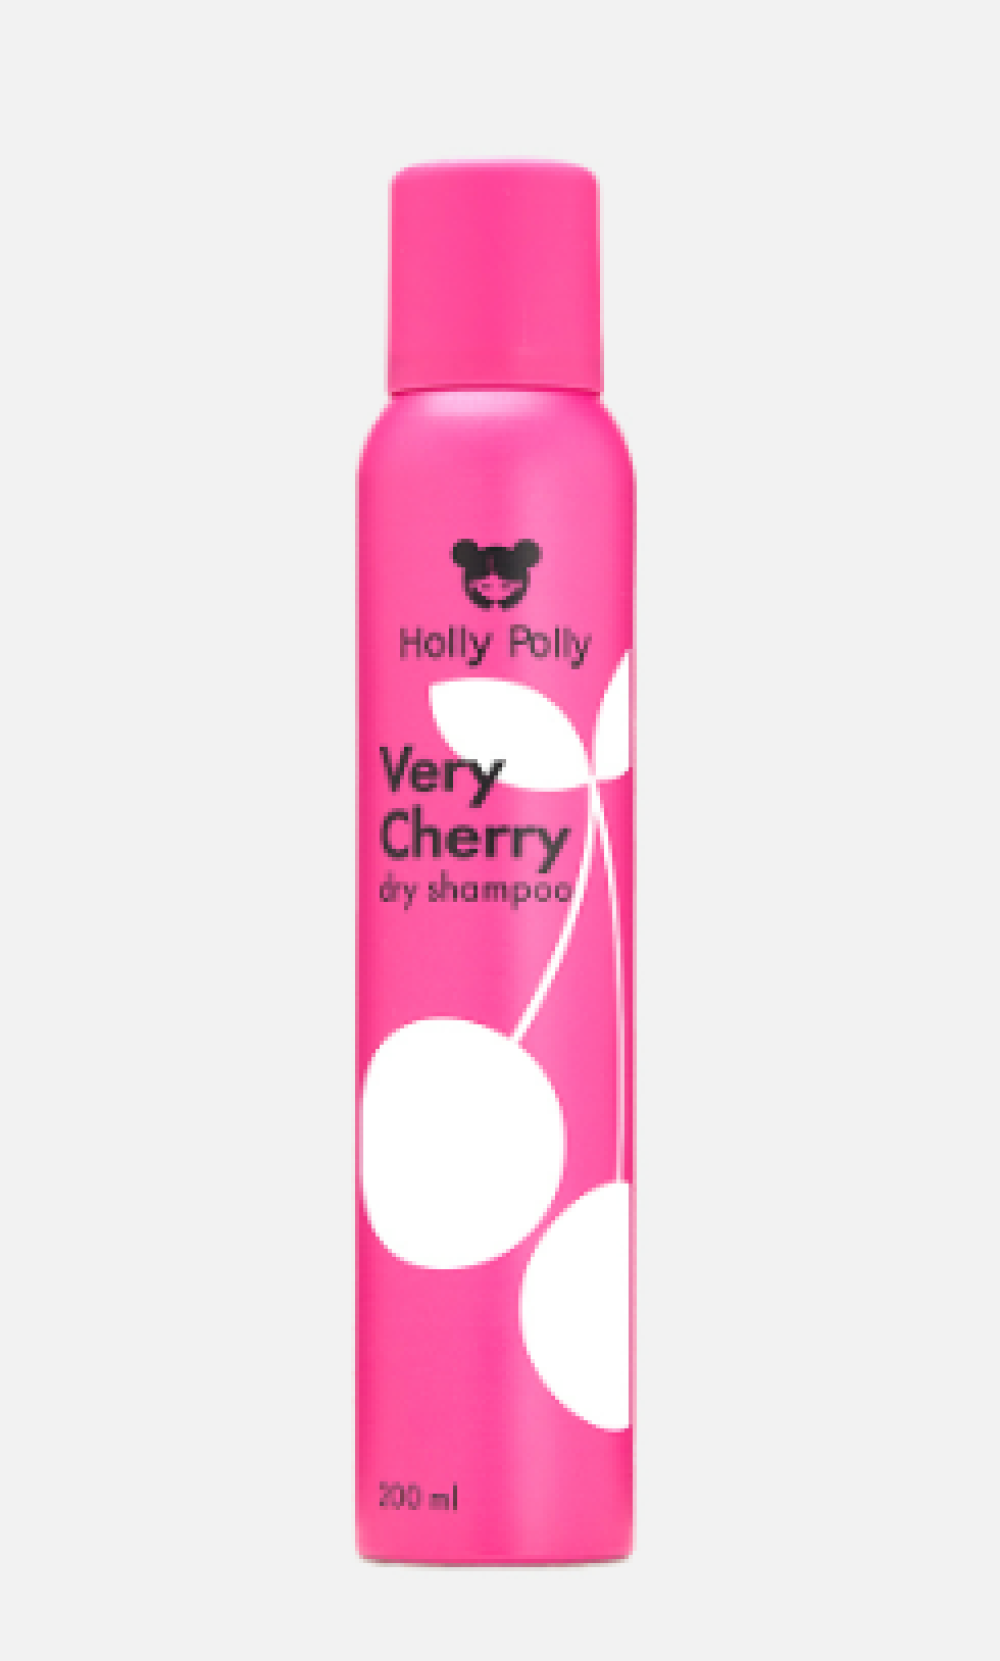 Сухой шампунь Holly Polly Dry Shampoo "Very Cherry", 200мл